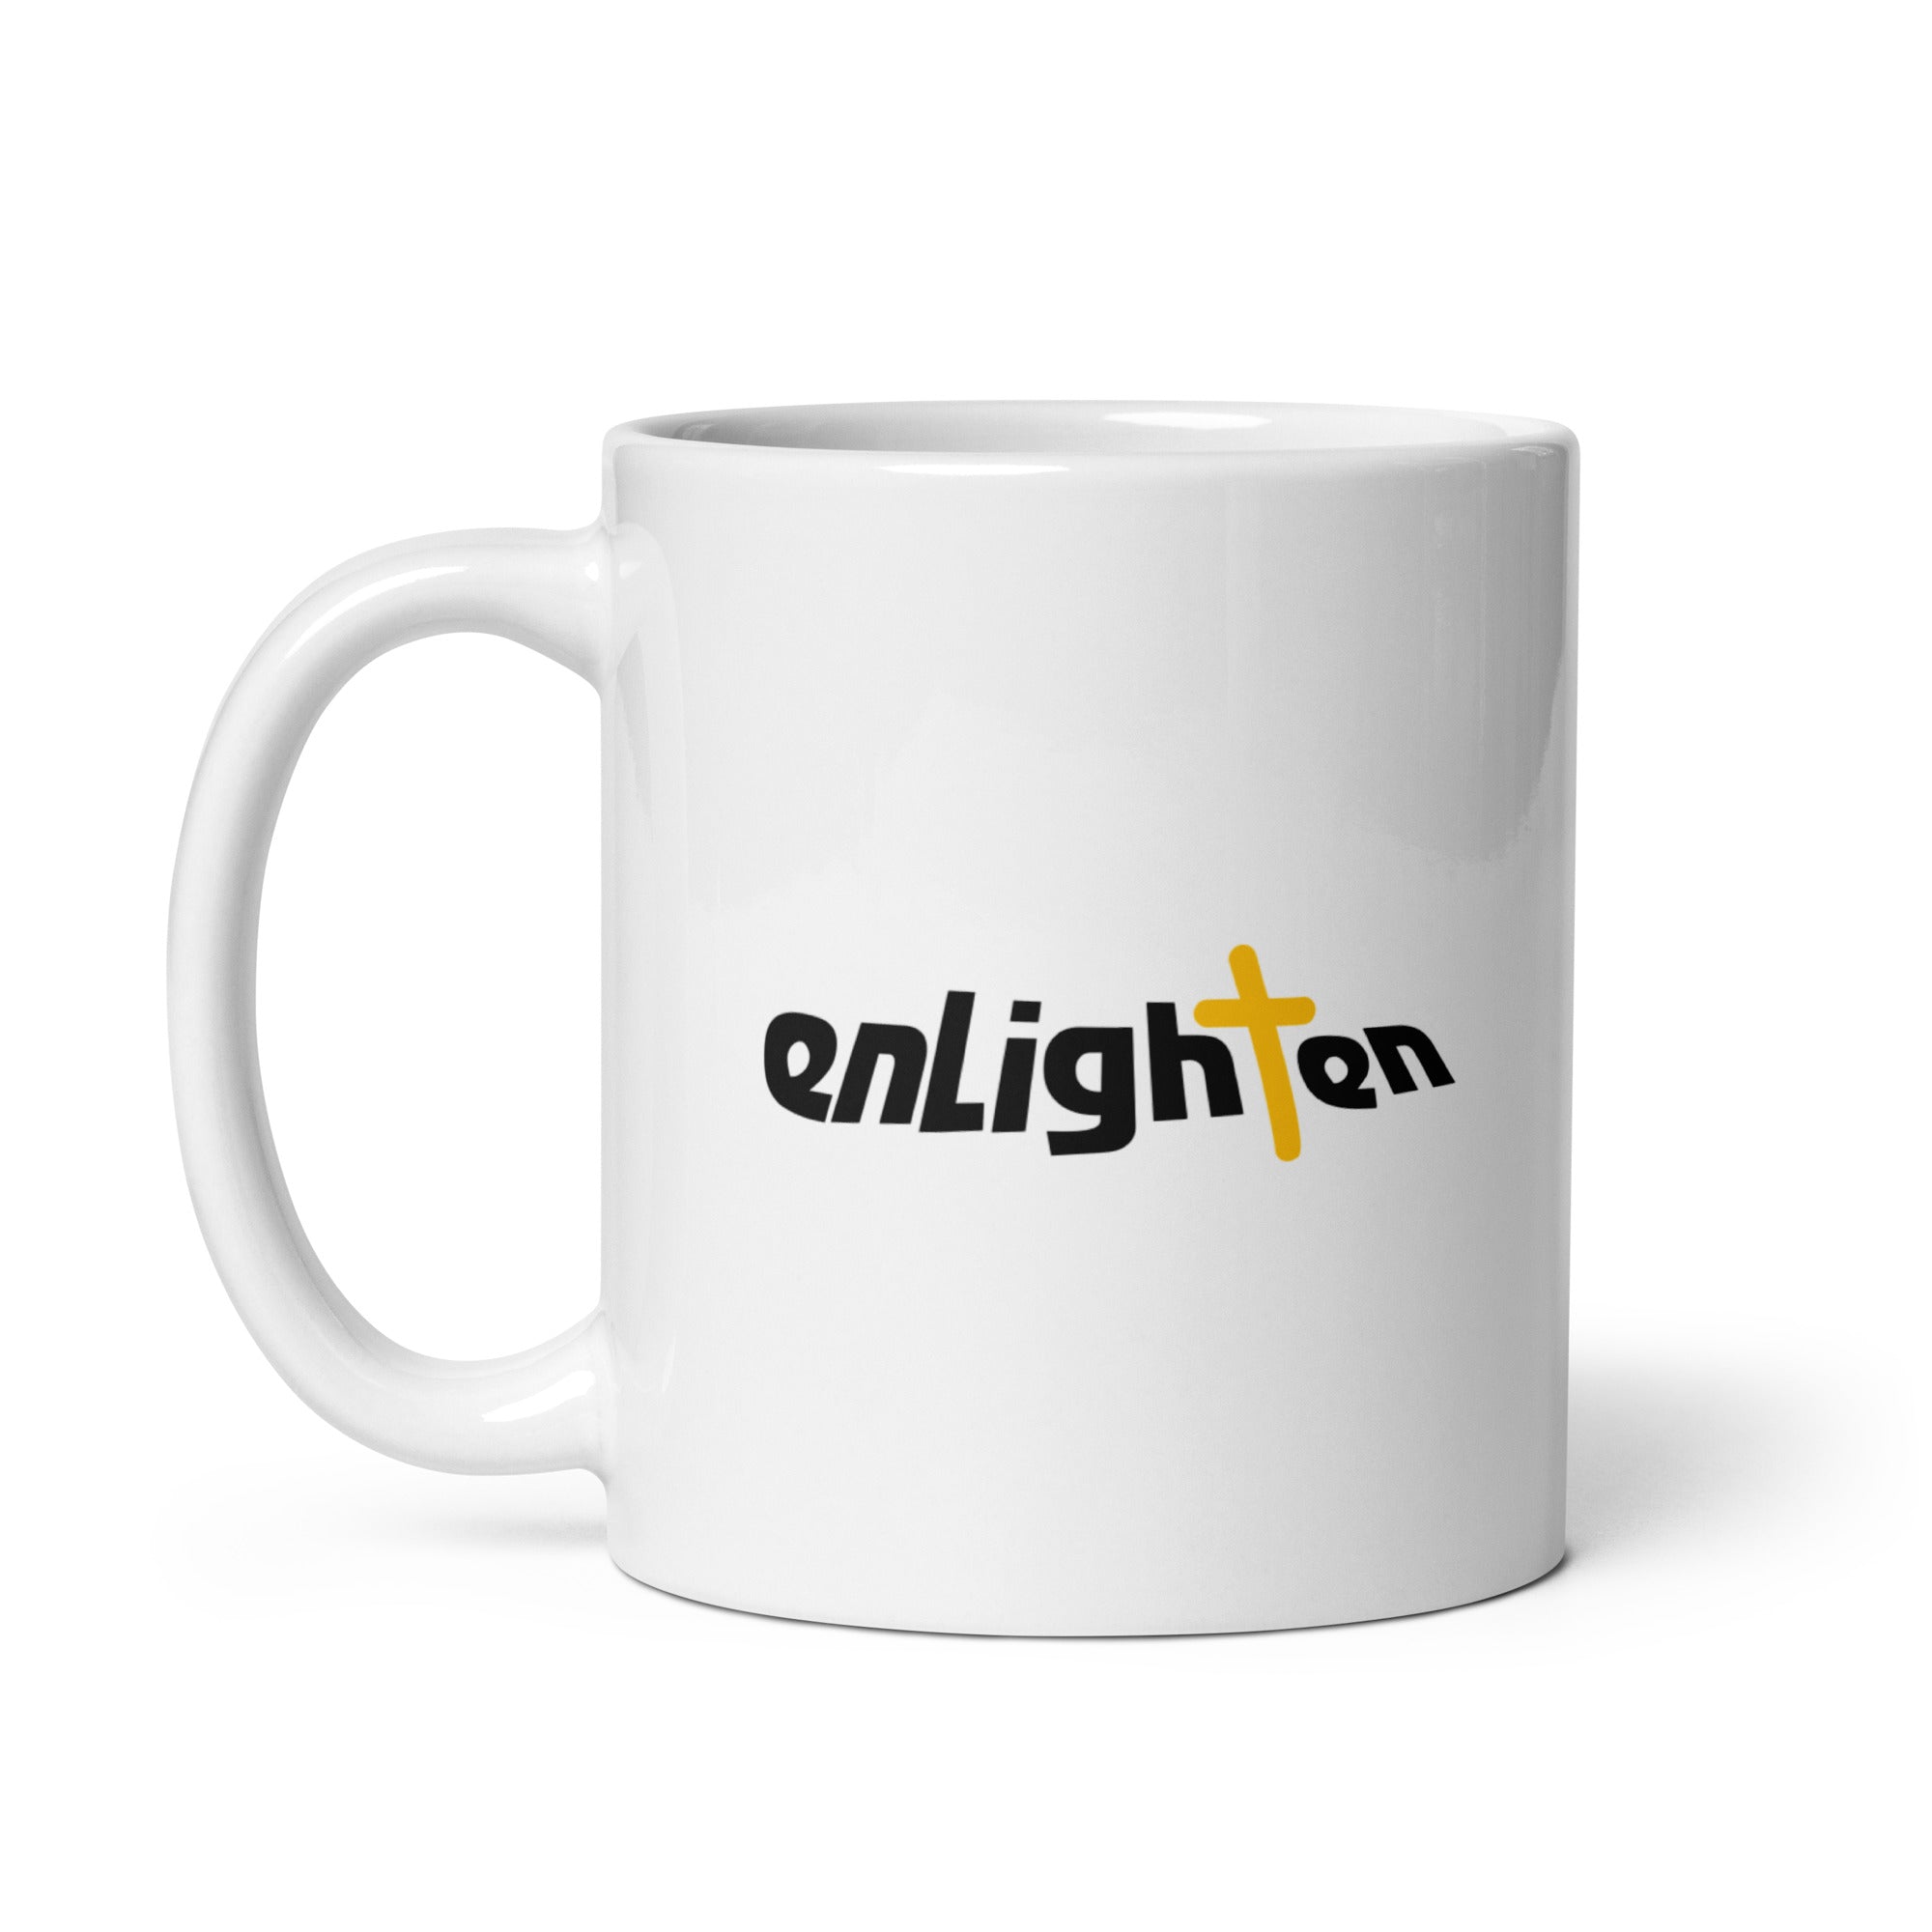 Enlighten: Mug